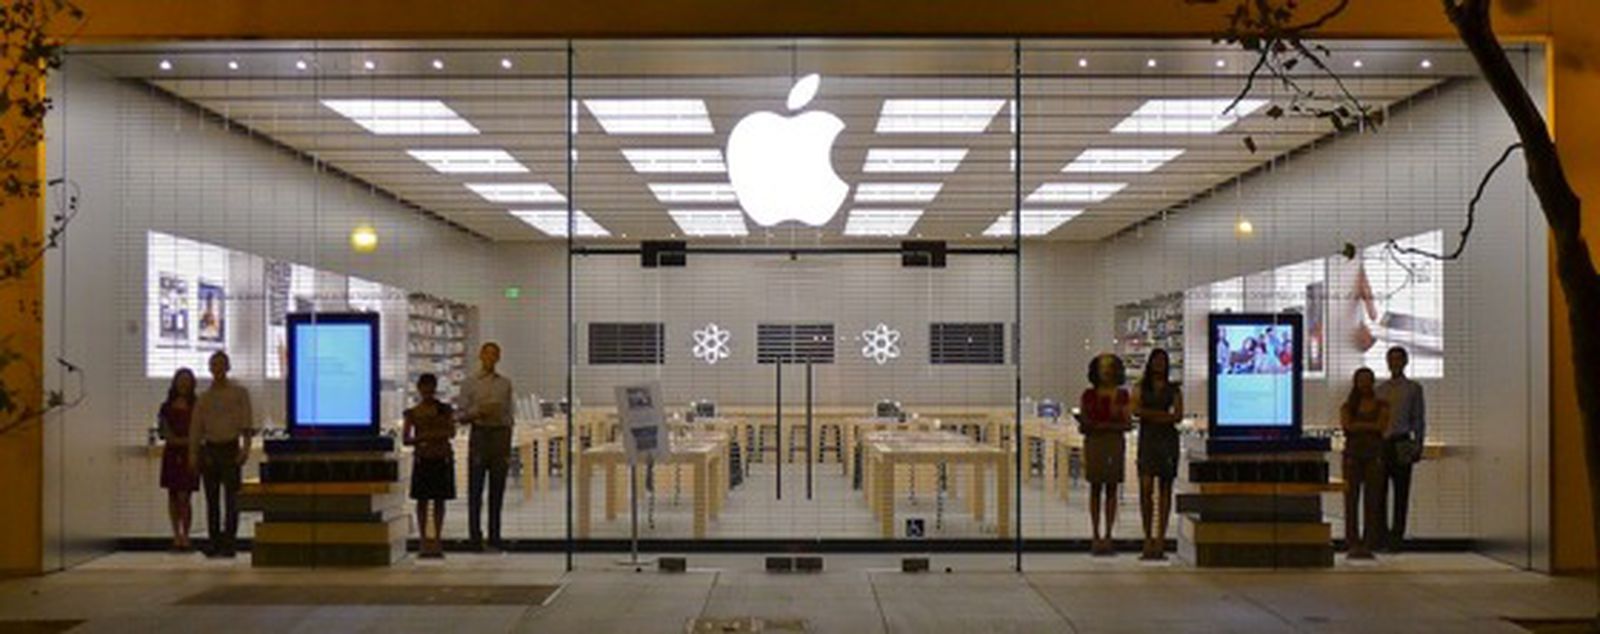 Upgrade retail. Витрина магазина Apple. Apple Store в Варшаве. Оформление магазина Apple. Apple театр магазин.